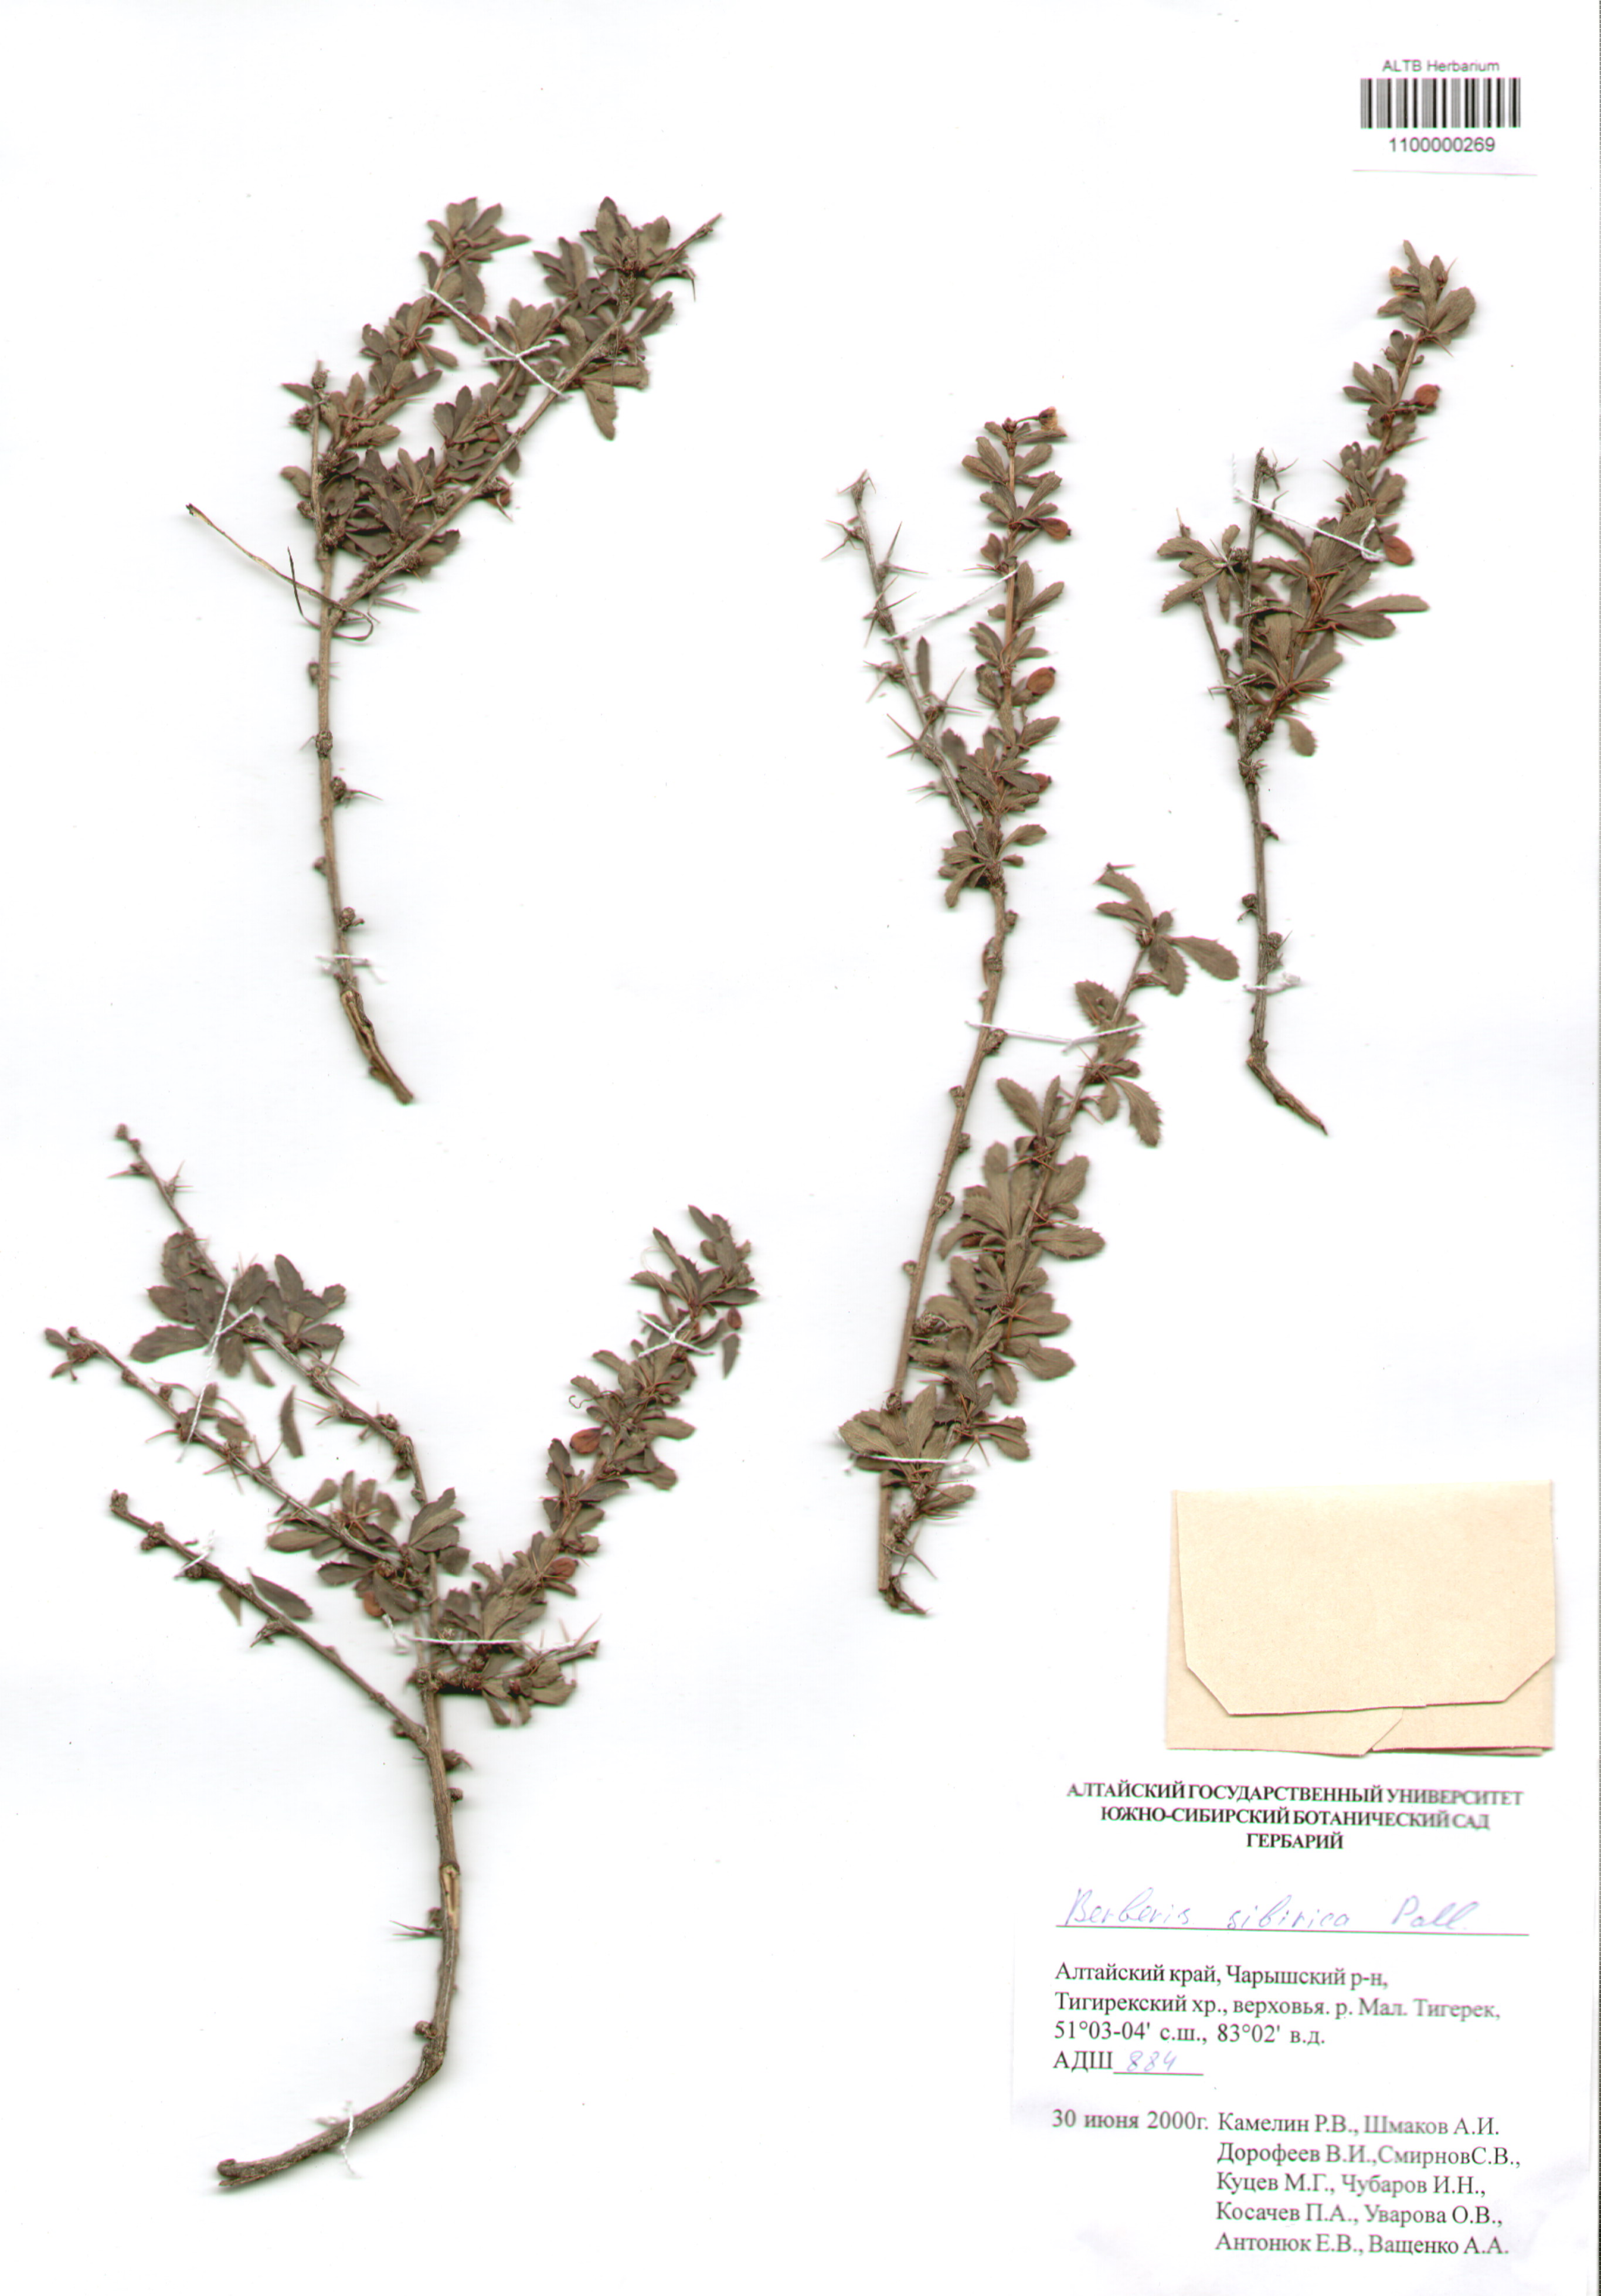 Berberidaceae,Berberis sibirica Pall.